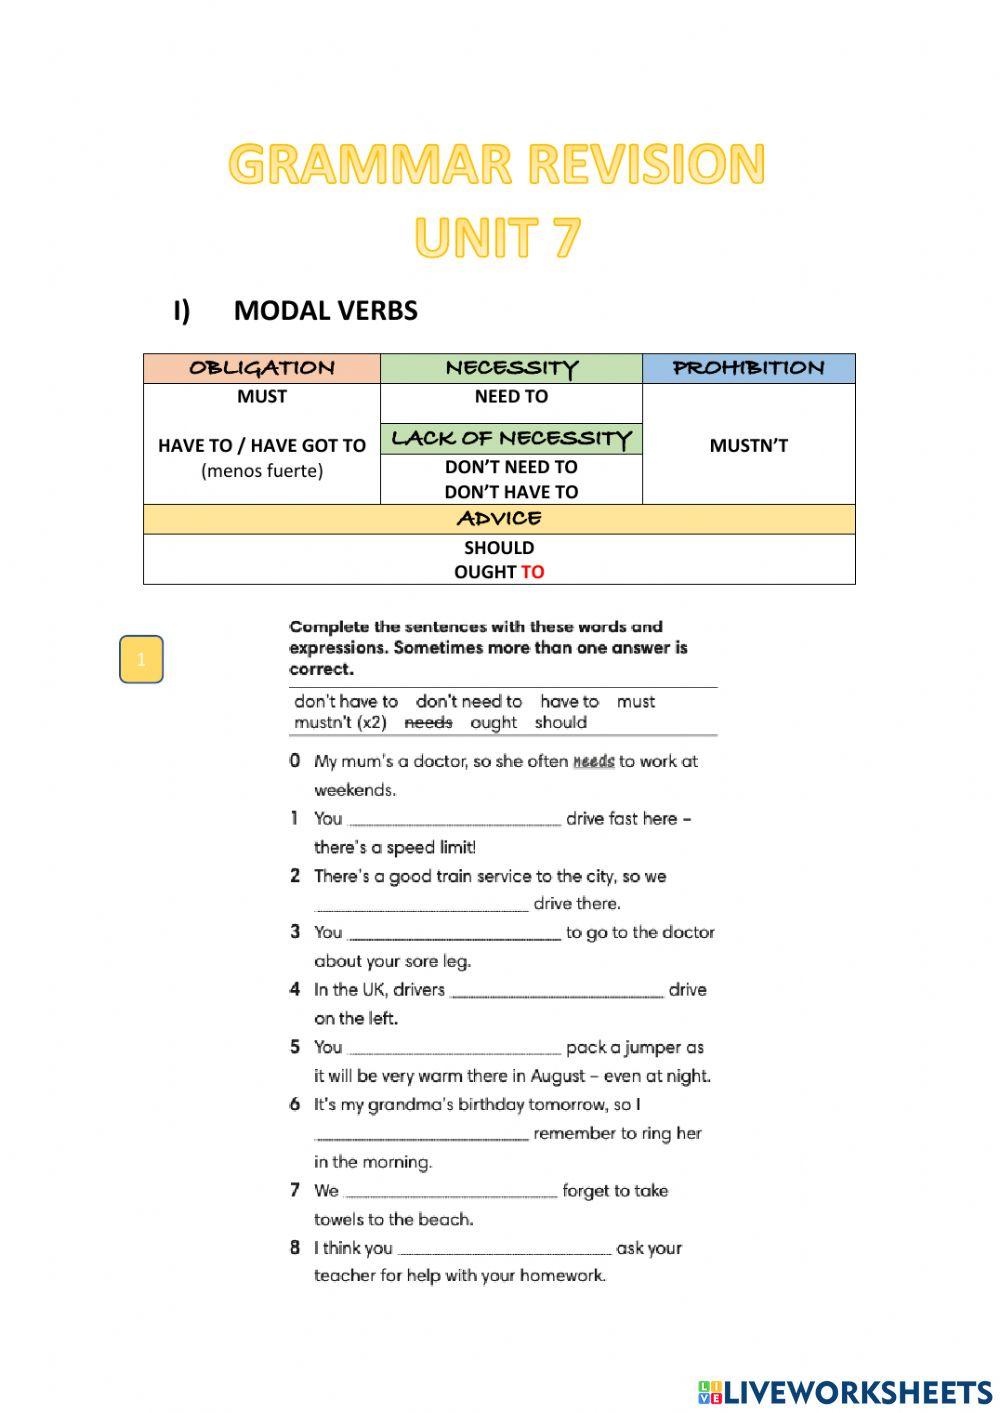 Grammar revision I unit 8